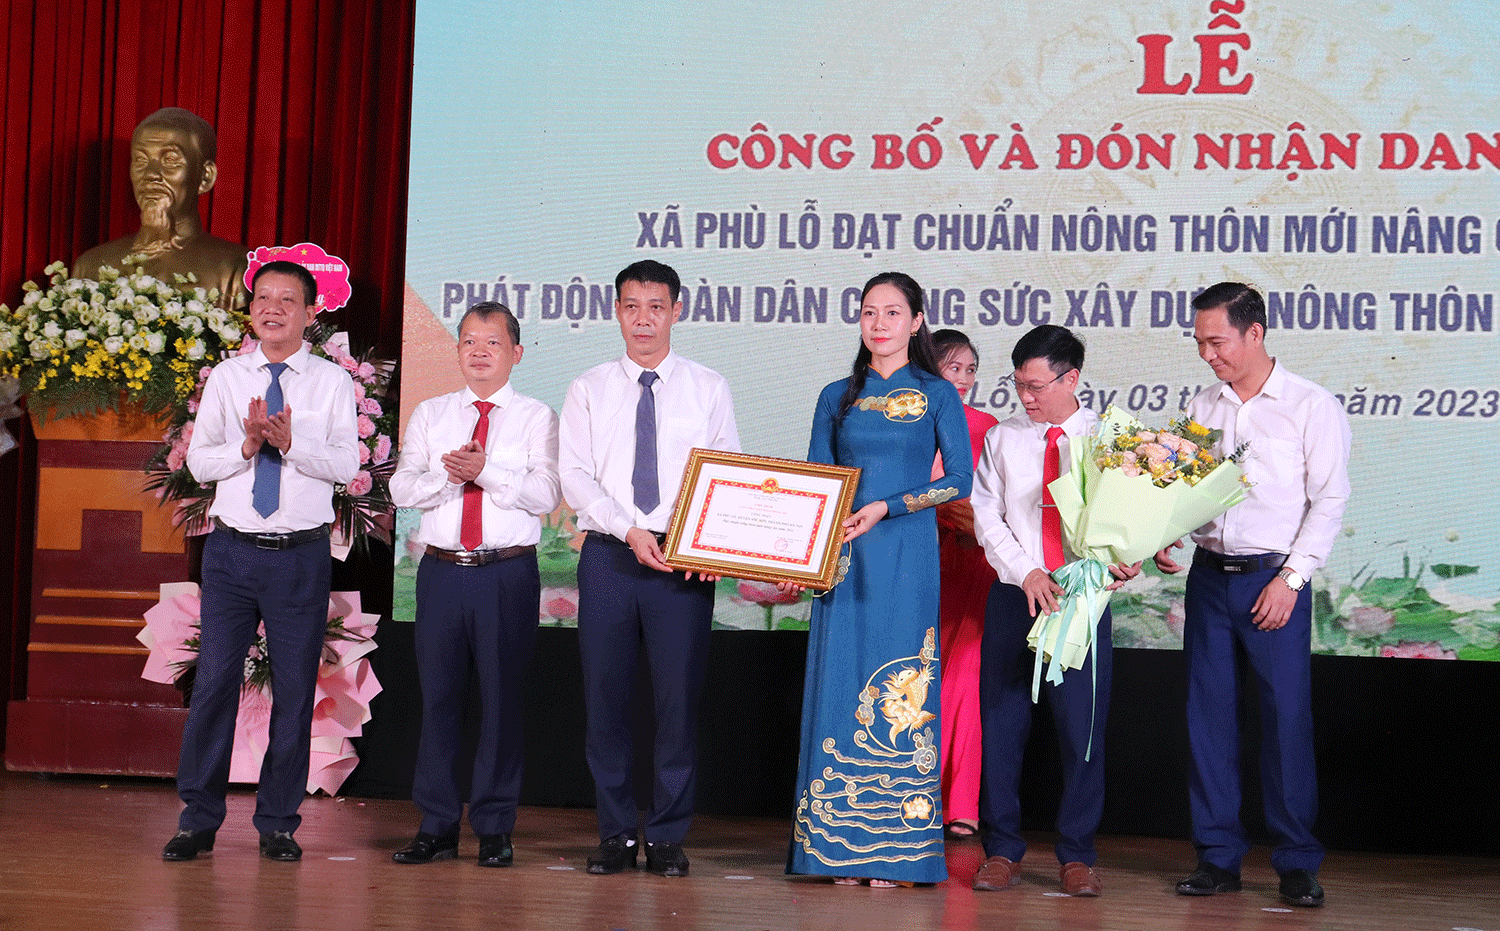 Huyện Sóc Sơn có thêm xã đạt chuẩn Nông thôn mới nâng cao